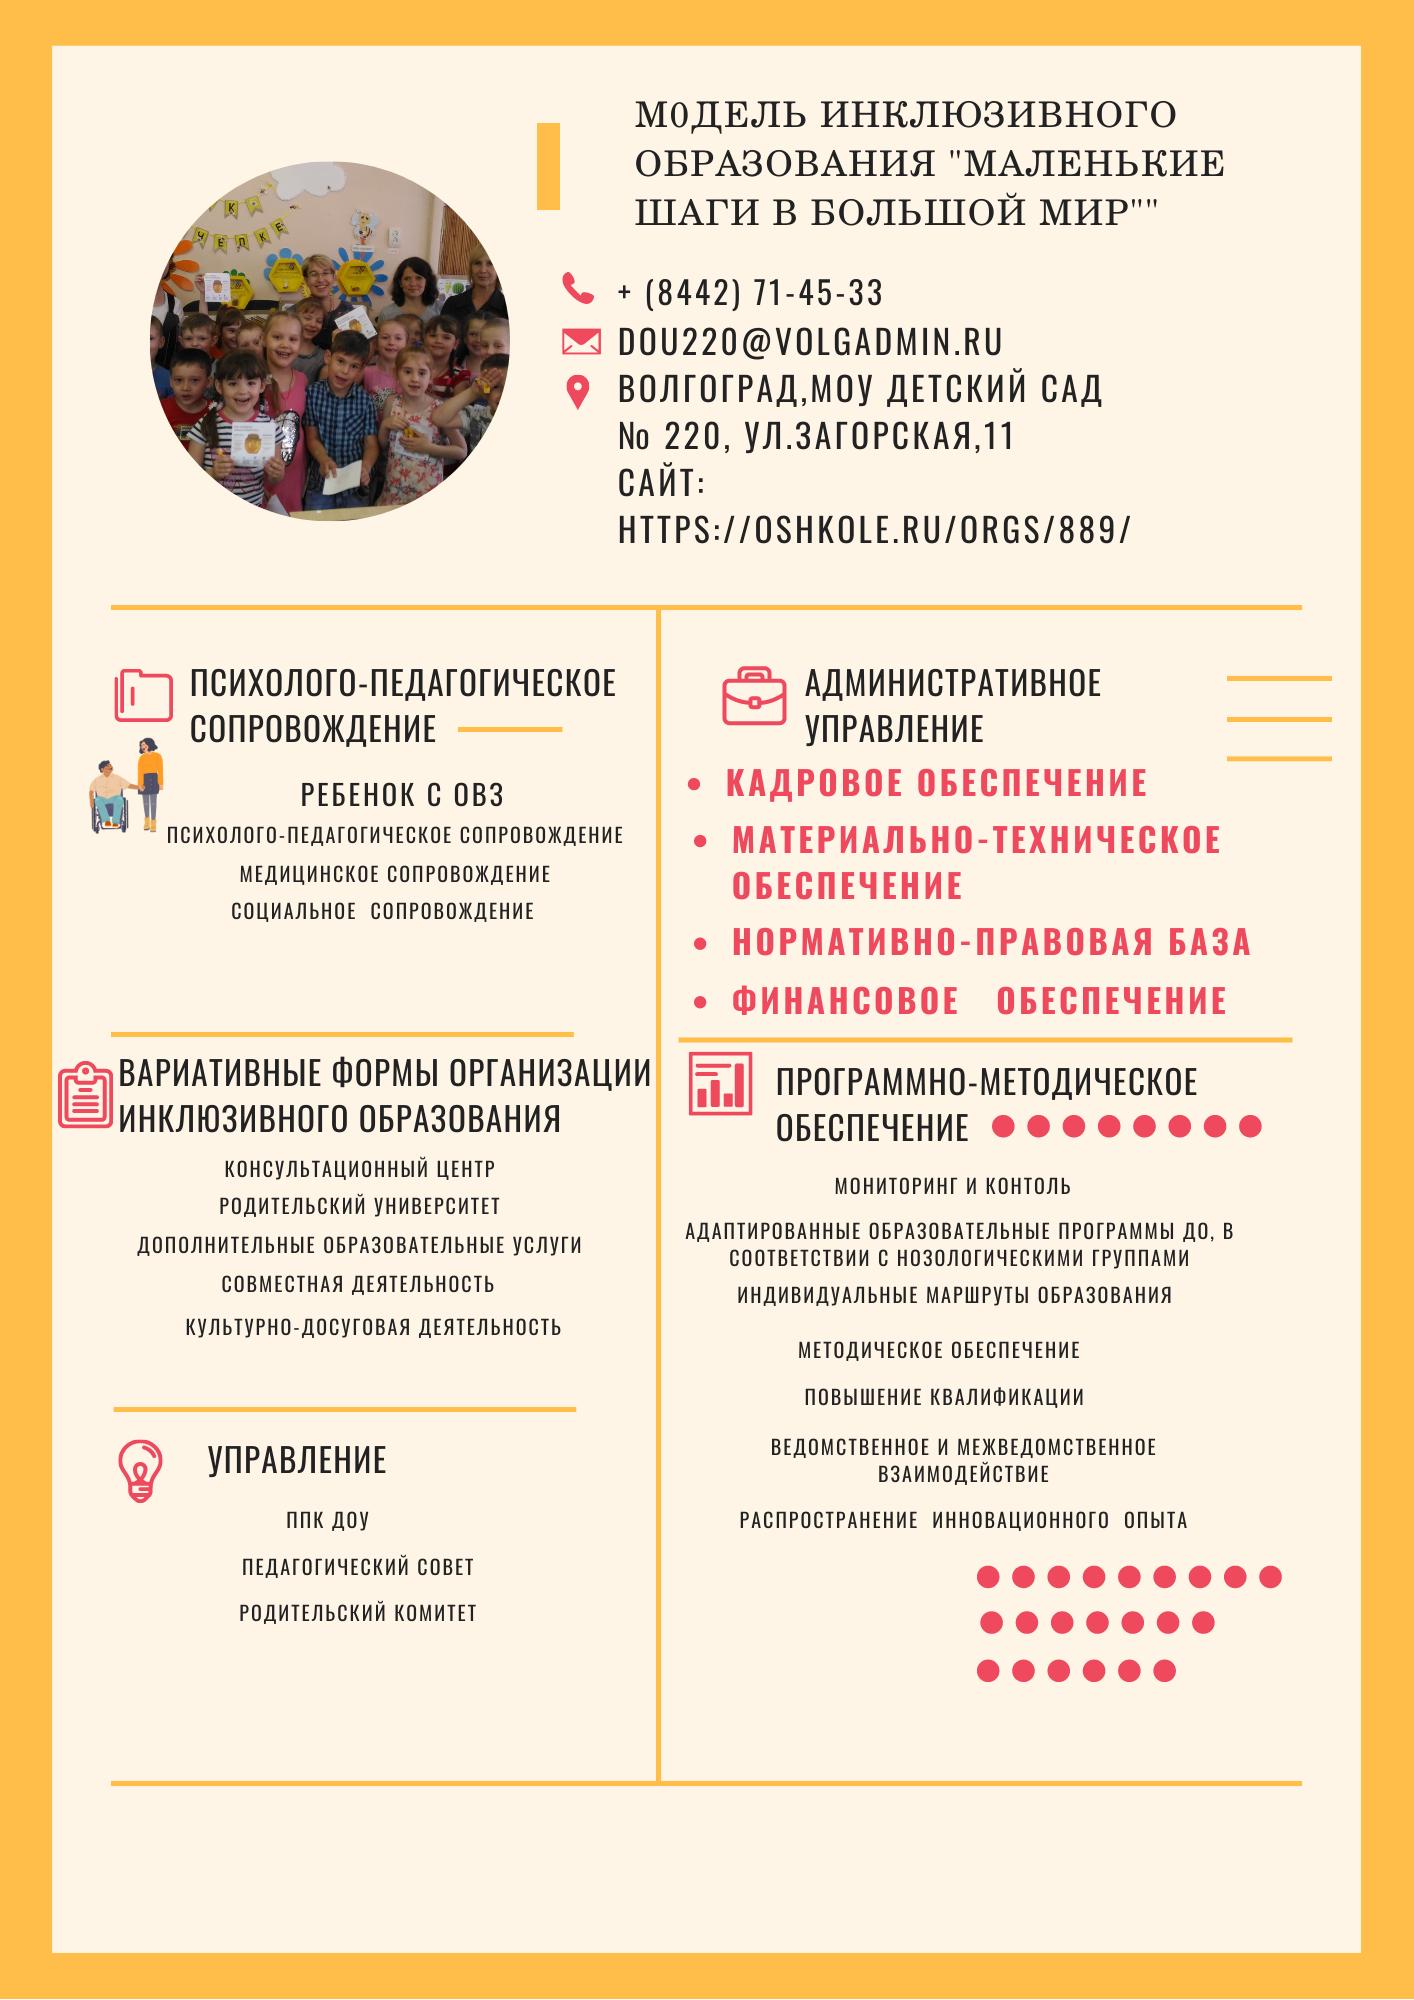 Модель инклюзивного образования МОУ Детского сада № 220.png